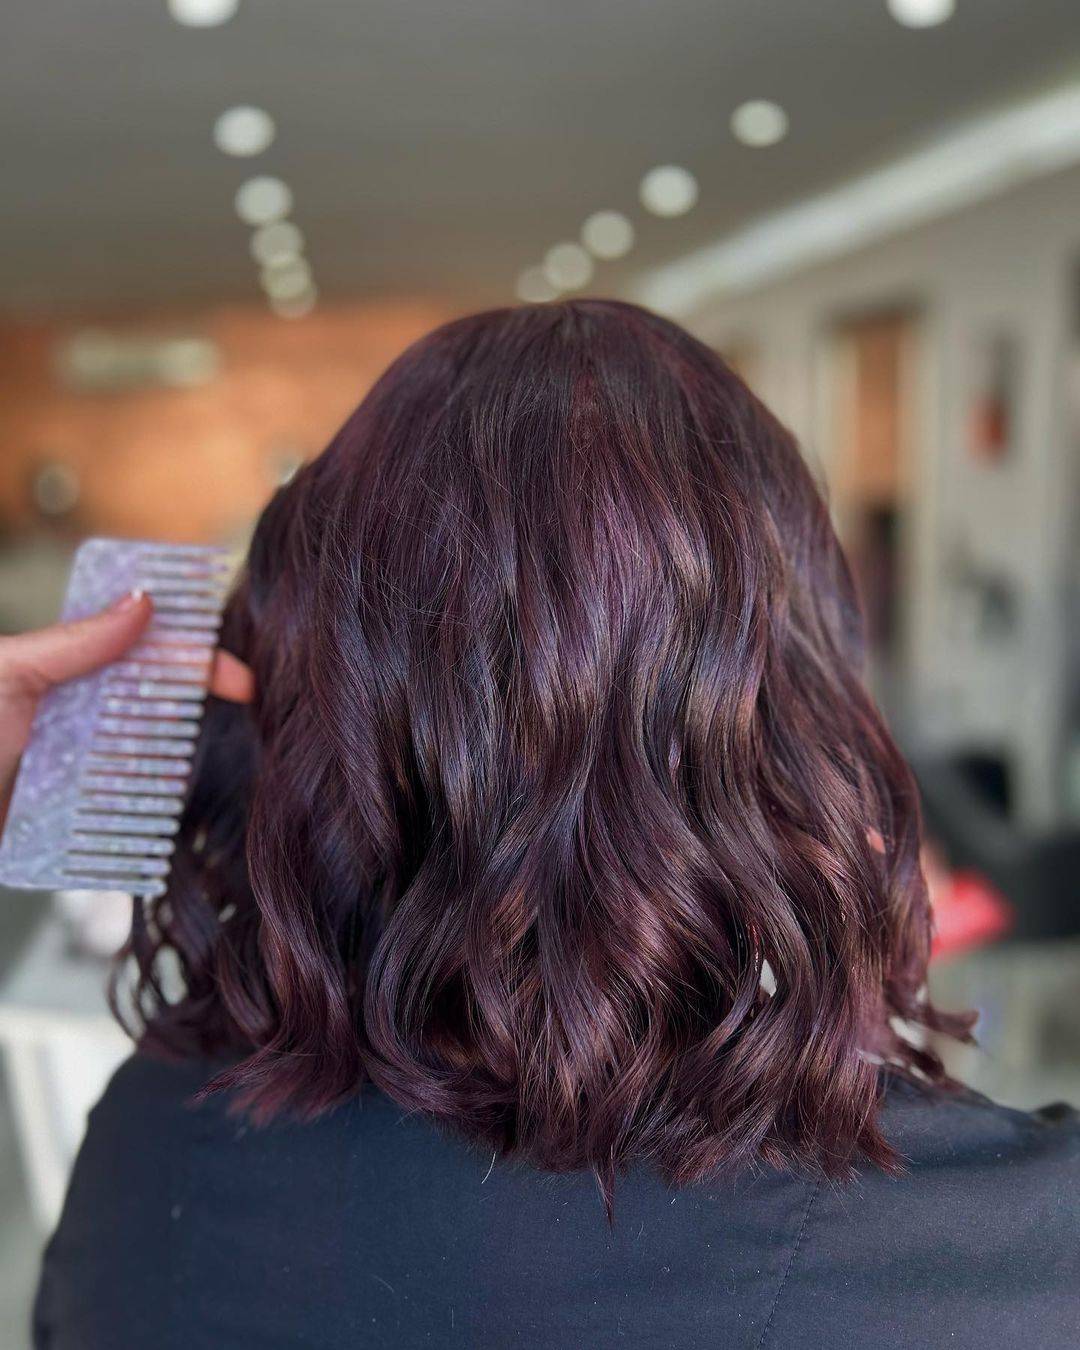 Burgundy hair color 323 burgundy hair color | burgundy hair color for women | burgundy hair color highlights Burgundy Hair Color